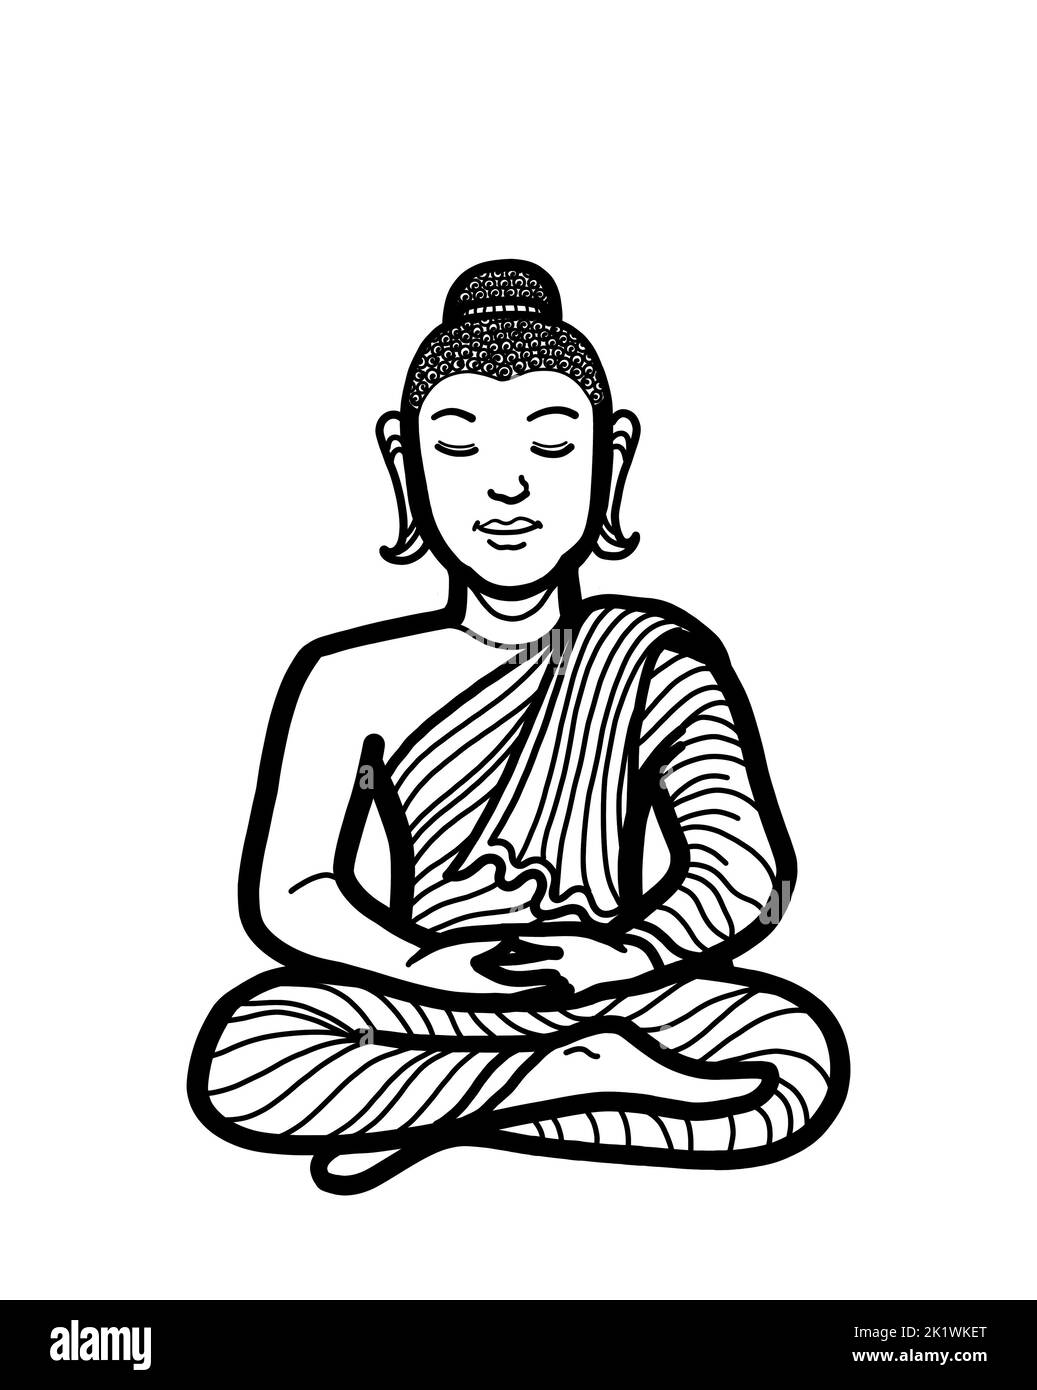 Gautama Buddha sitzt in Lotushaltung und meditiert. Buddhistische Meditationspraxis für Erleuchtung, Achtsamkeit, Frieden, Harmonie und Spiritualität. Stockfoto